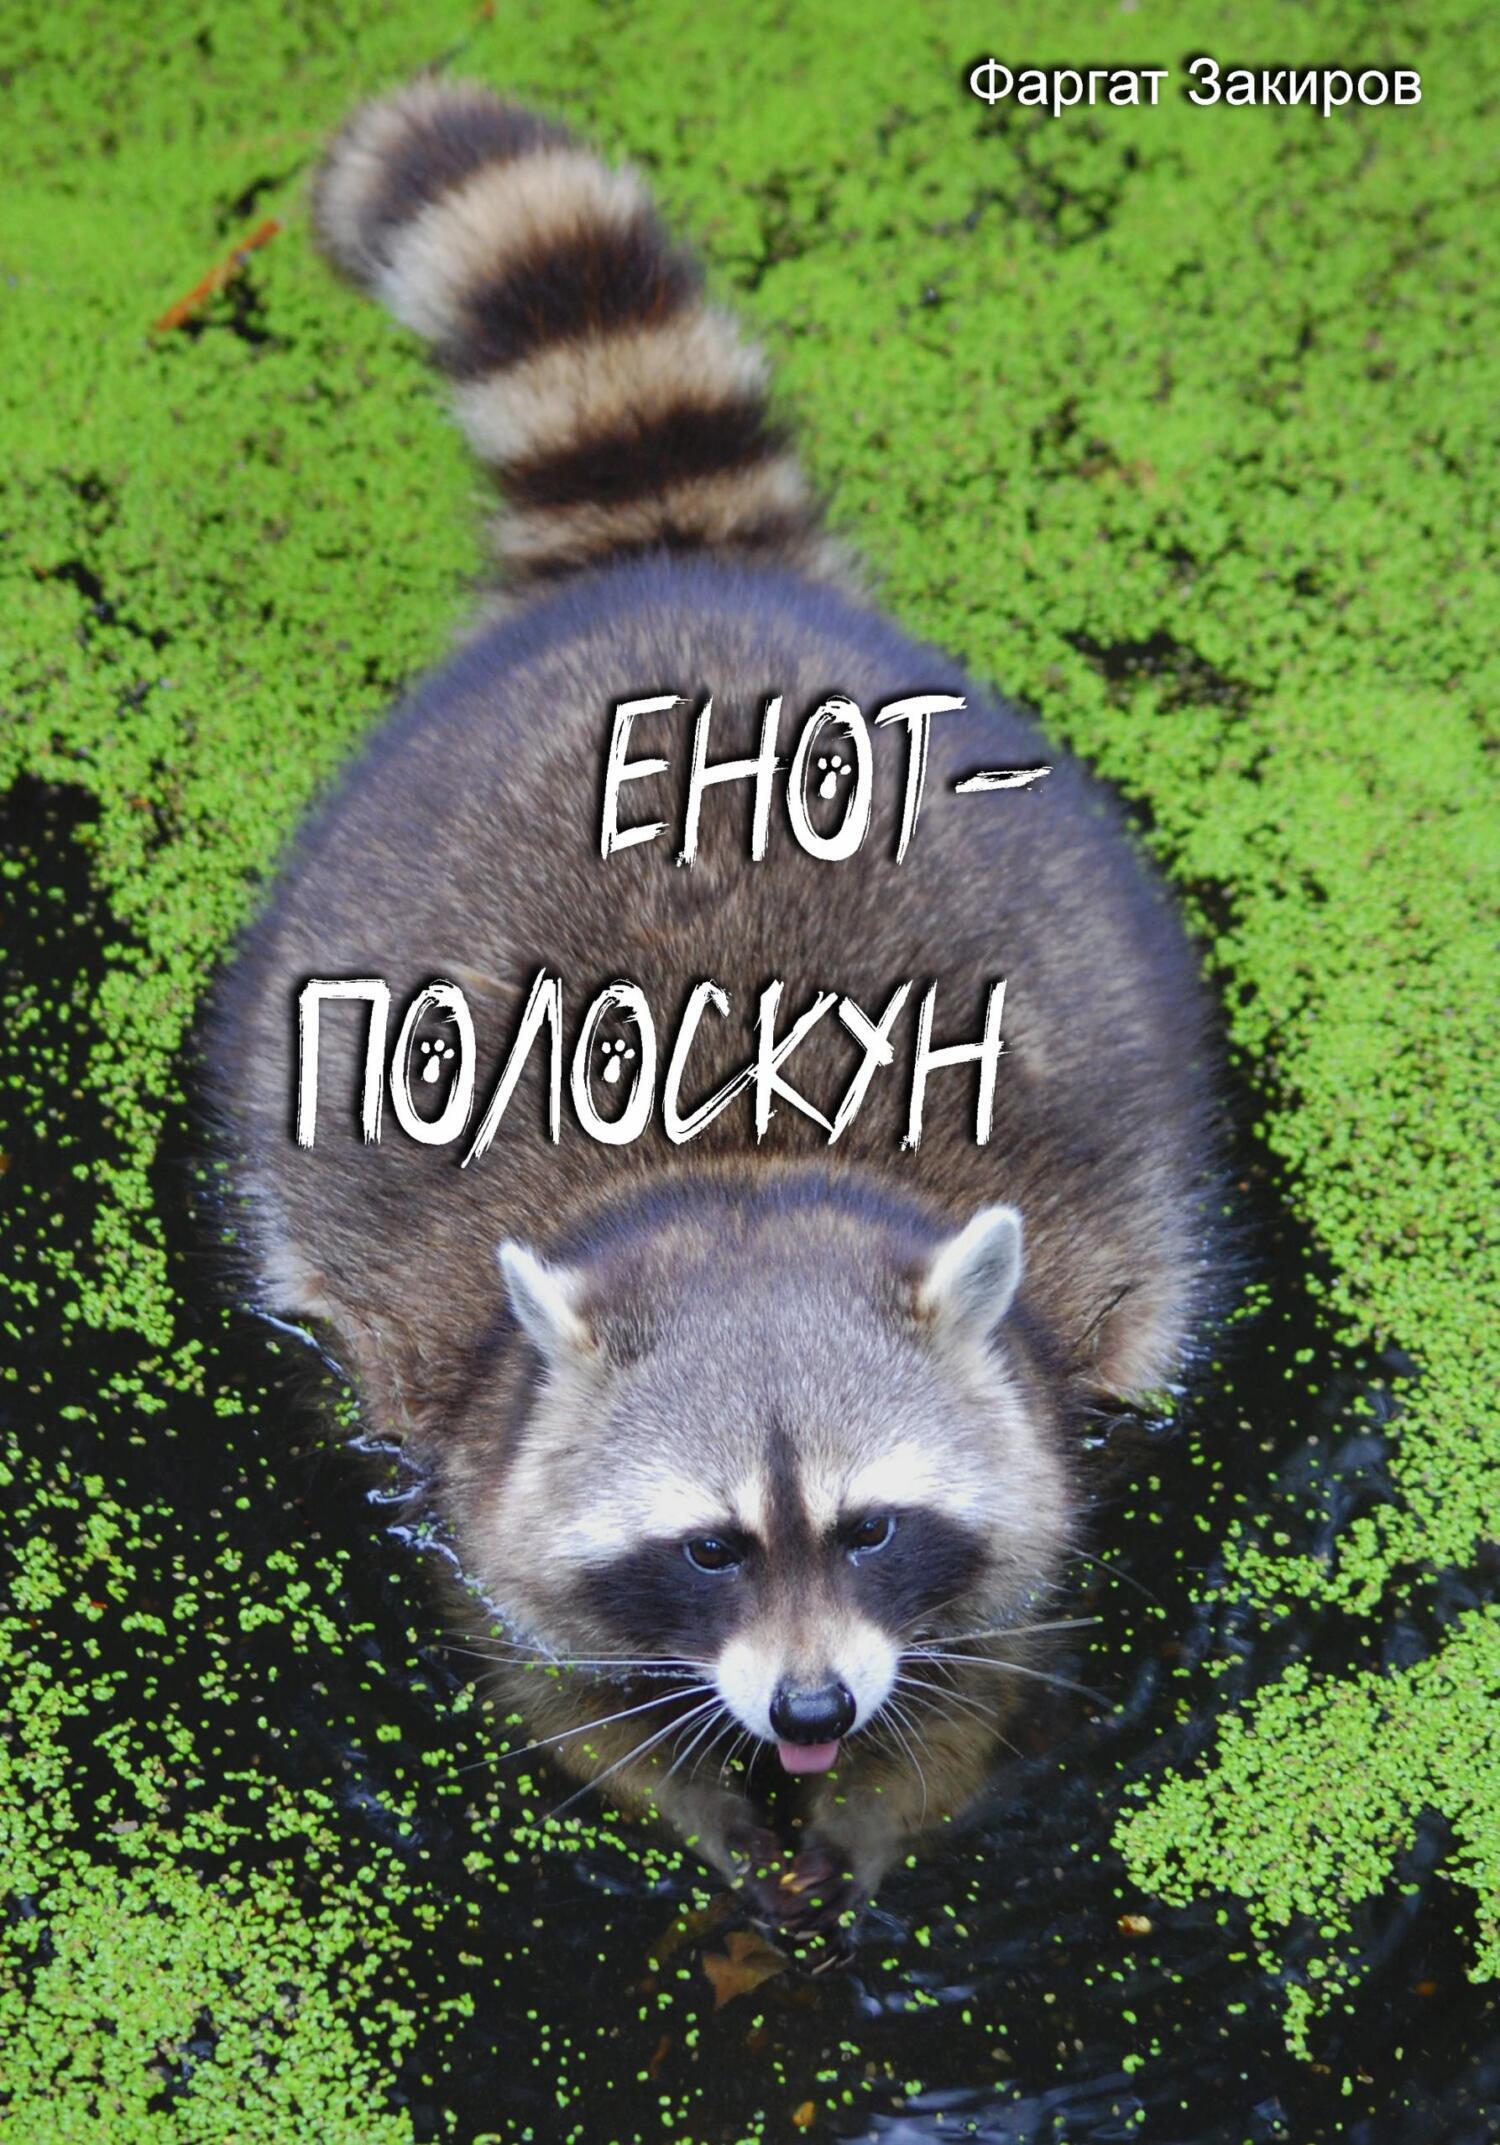 Енот-полоскун, Фаргат Закиров – скачать книгу fb2, epub, pdf на ЛитРес